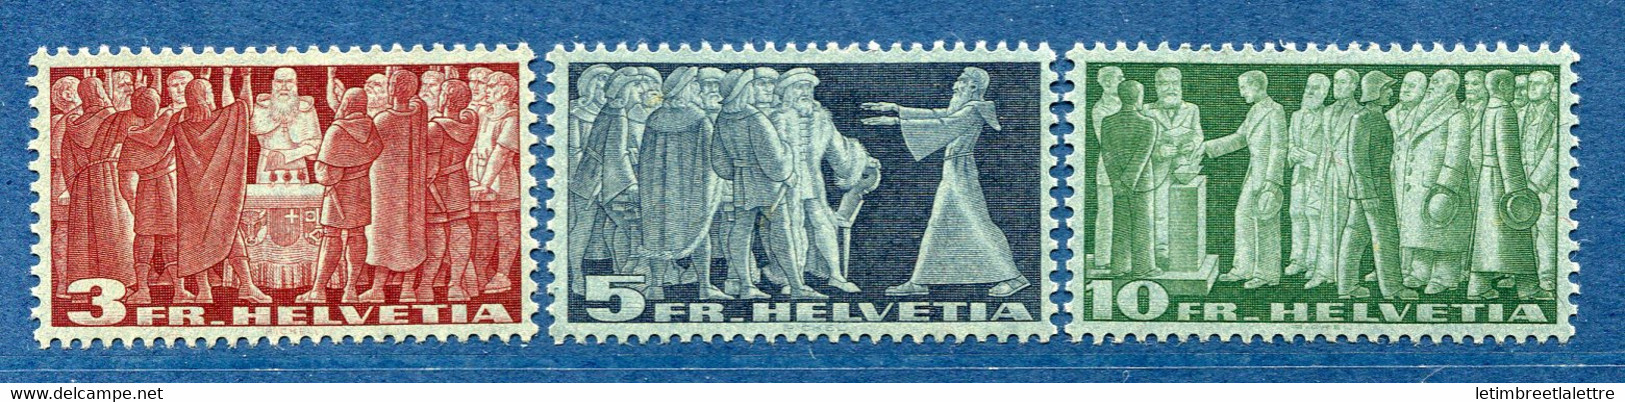 ⭐ Suisse - YT N° 313 à 315 C * - Neuf Avec Charnière - 1937 ⭐ - Unused Stamps